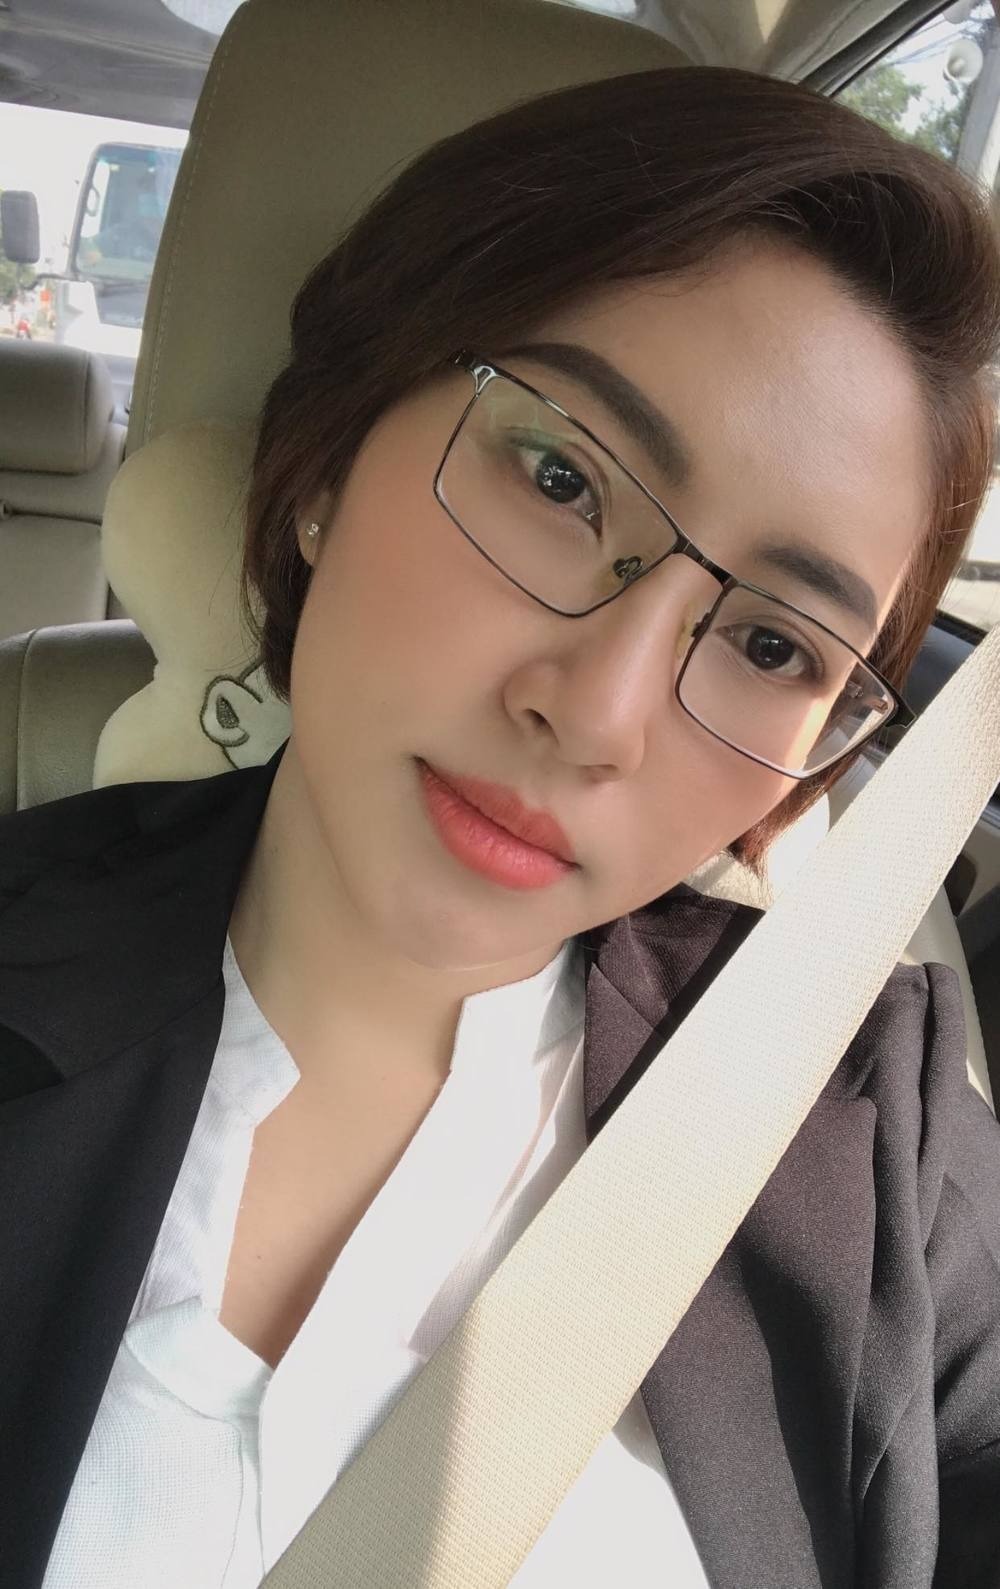 Hoa hậu Đặng Thu Thảo ly hôn, loạt ảnh 'xấu tệ' bị khui lại kh.iển bao người nghẹn ngào 4